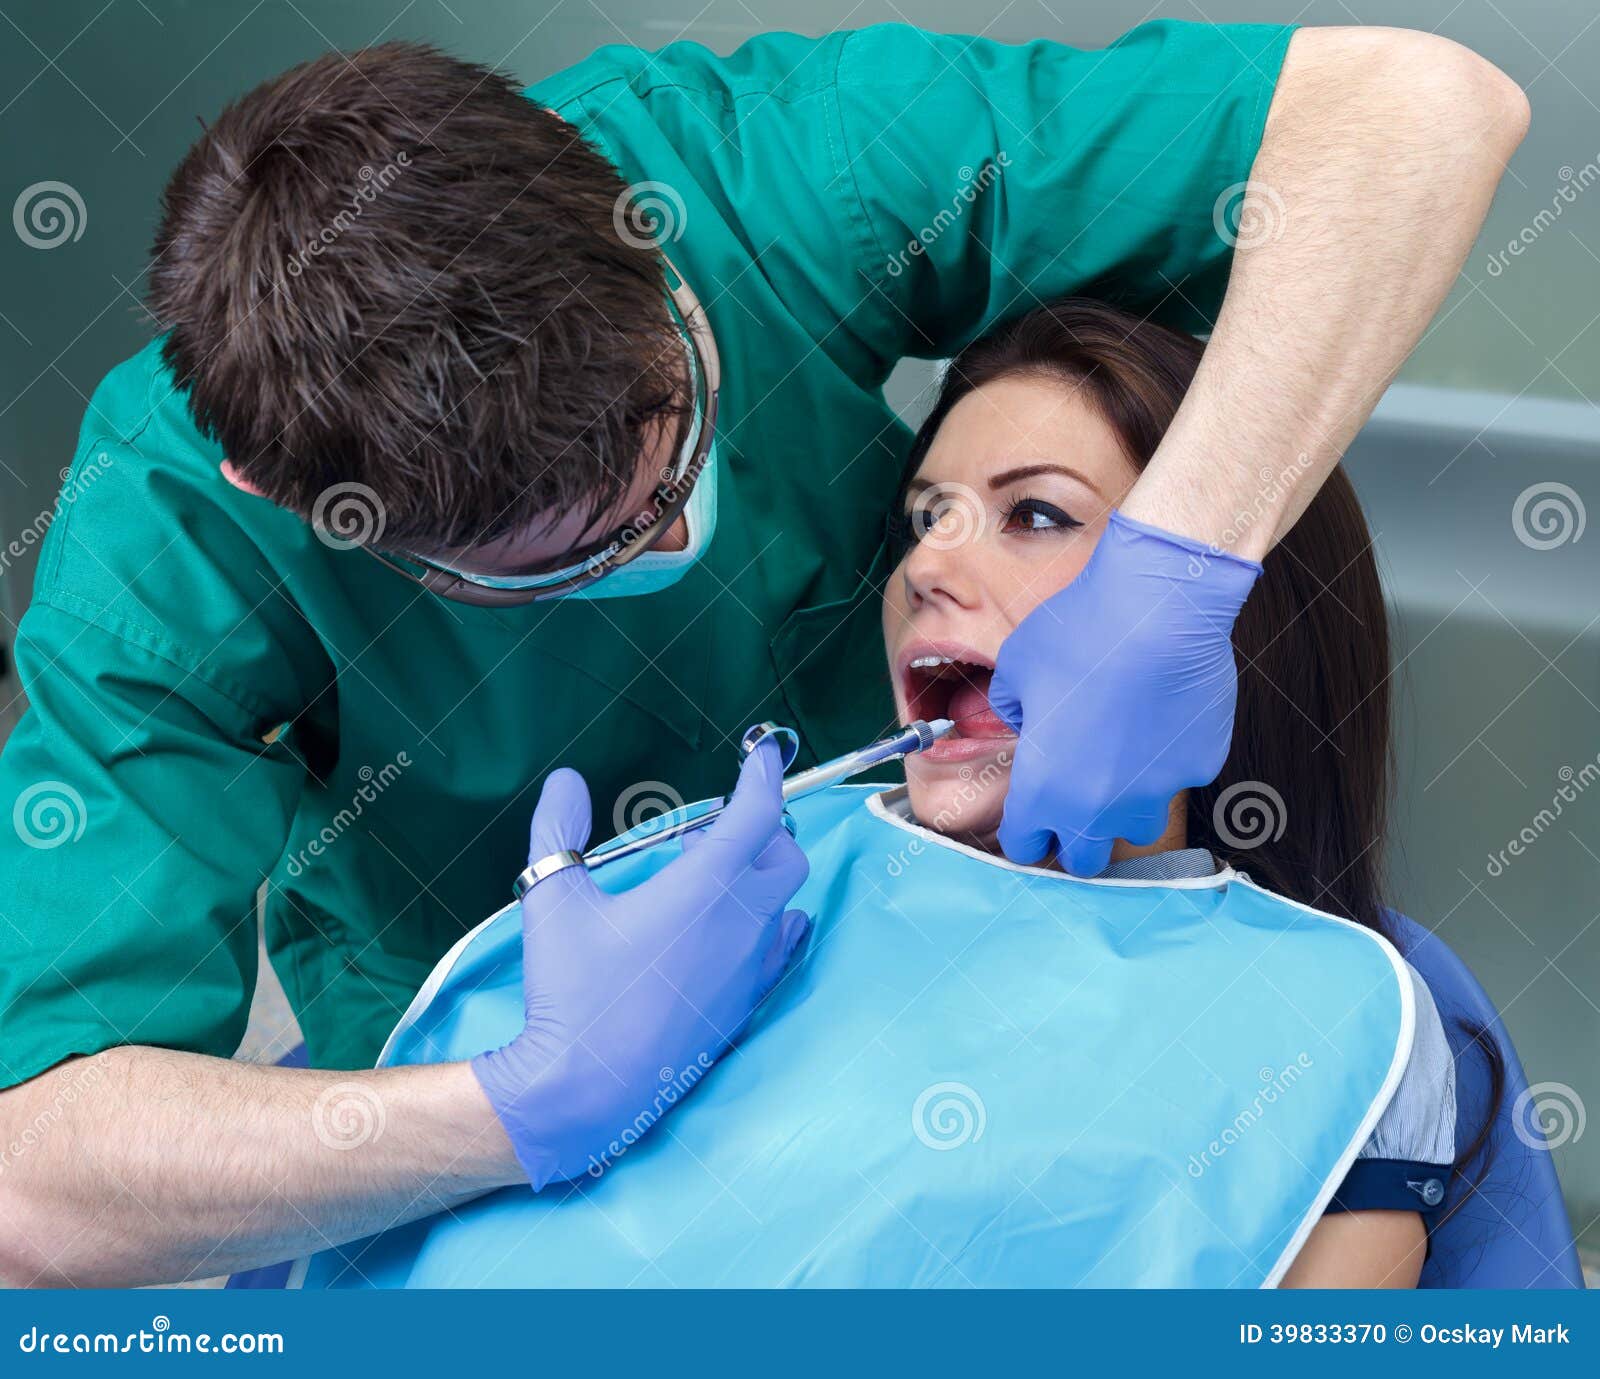 Обезболивание в стоматологии